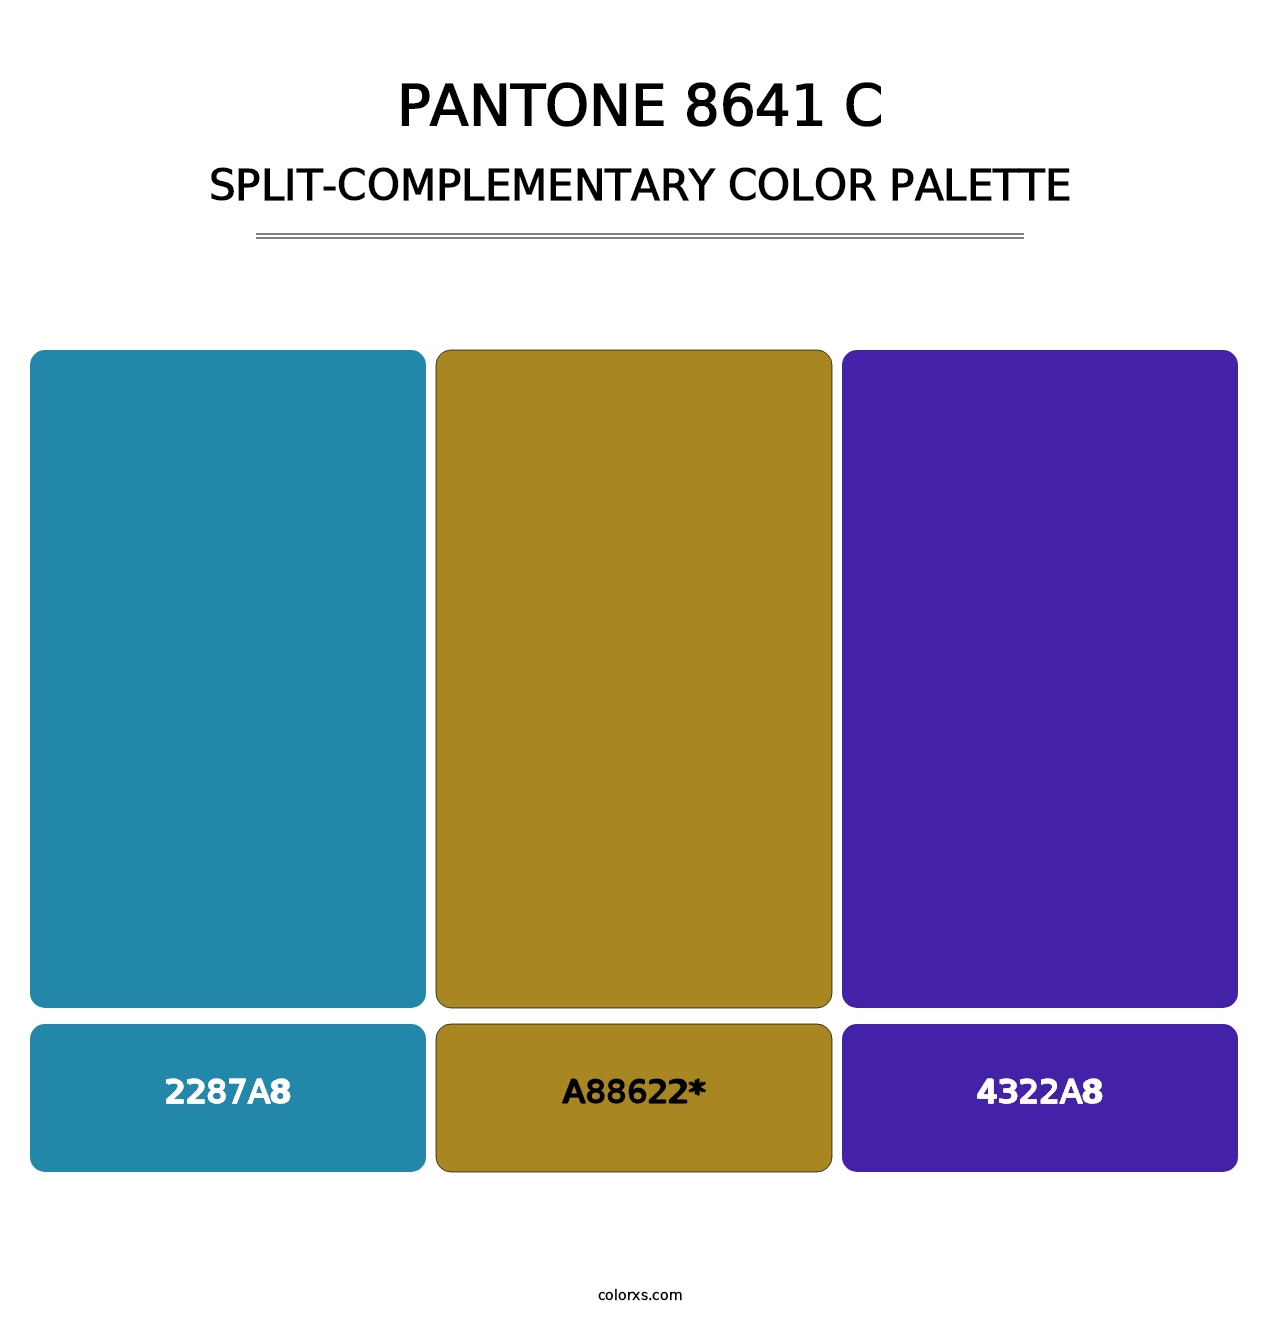 PANTONE 8641 C - Split-Complementary Color Palette